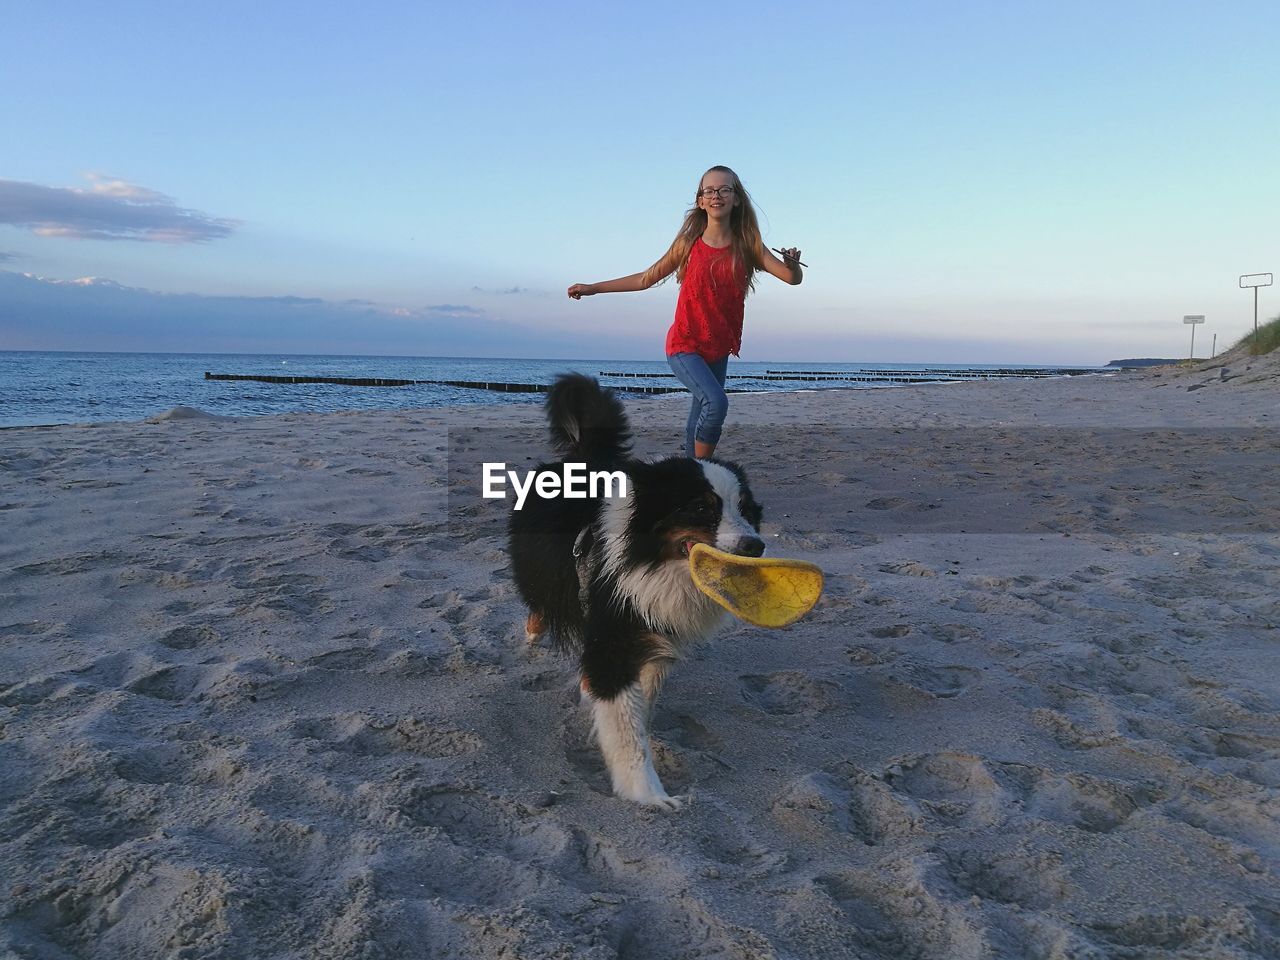 Girl with dog on beach against sky